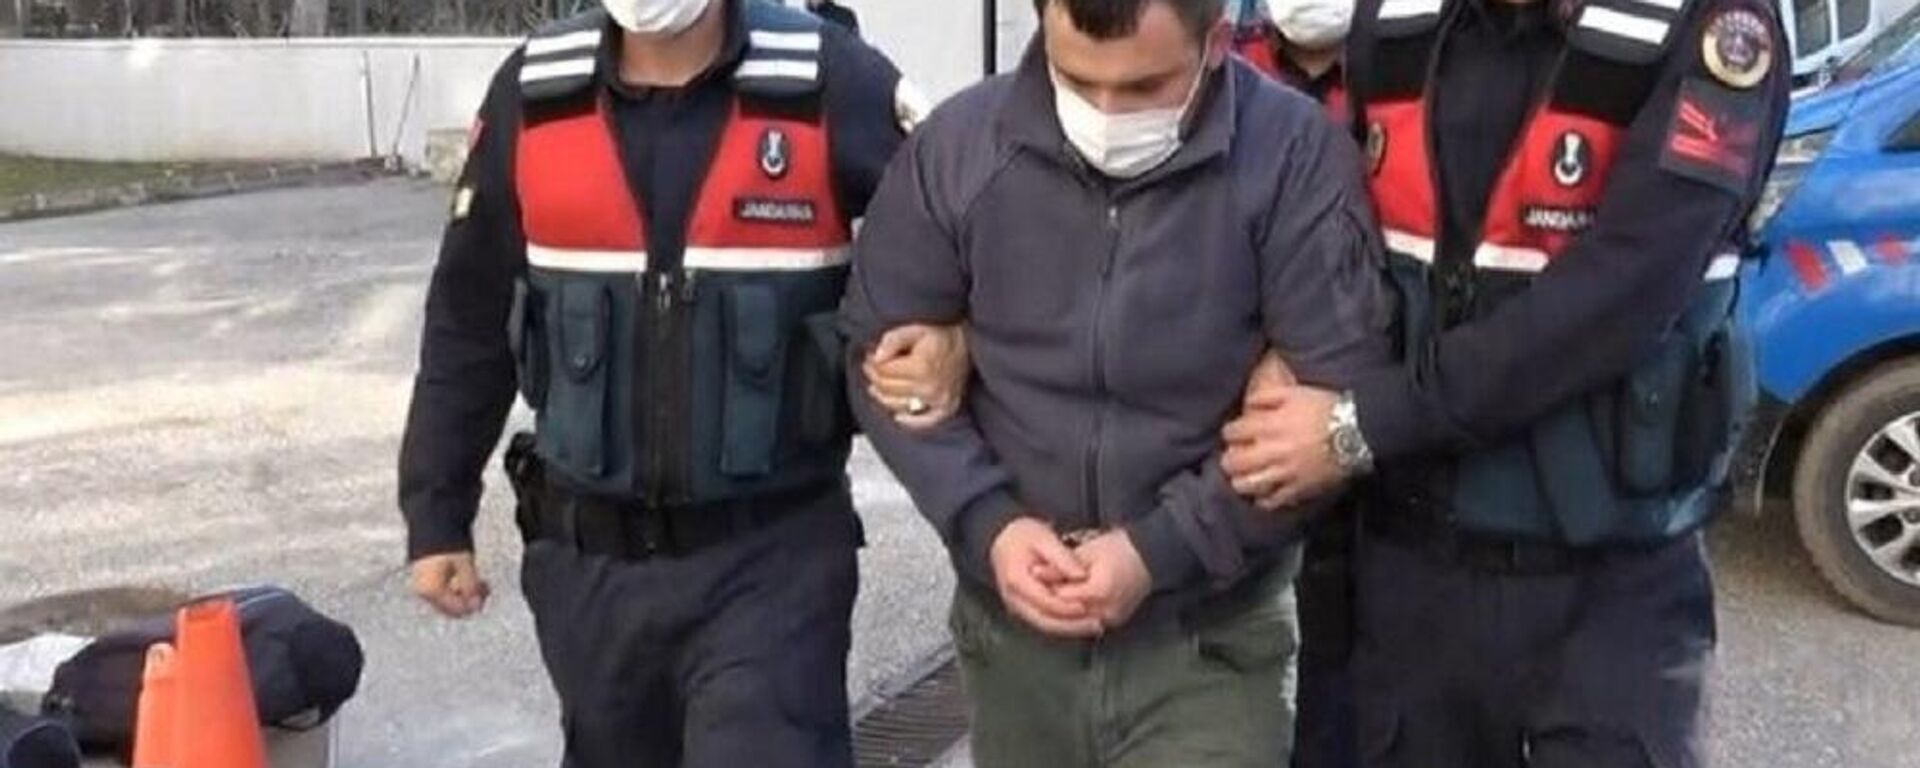 Boşanma aşamasındaki eşinin baba evini silahla basan adam tutuklandı - Sputnik Türkiye, 1920, 07.12.2021